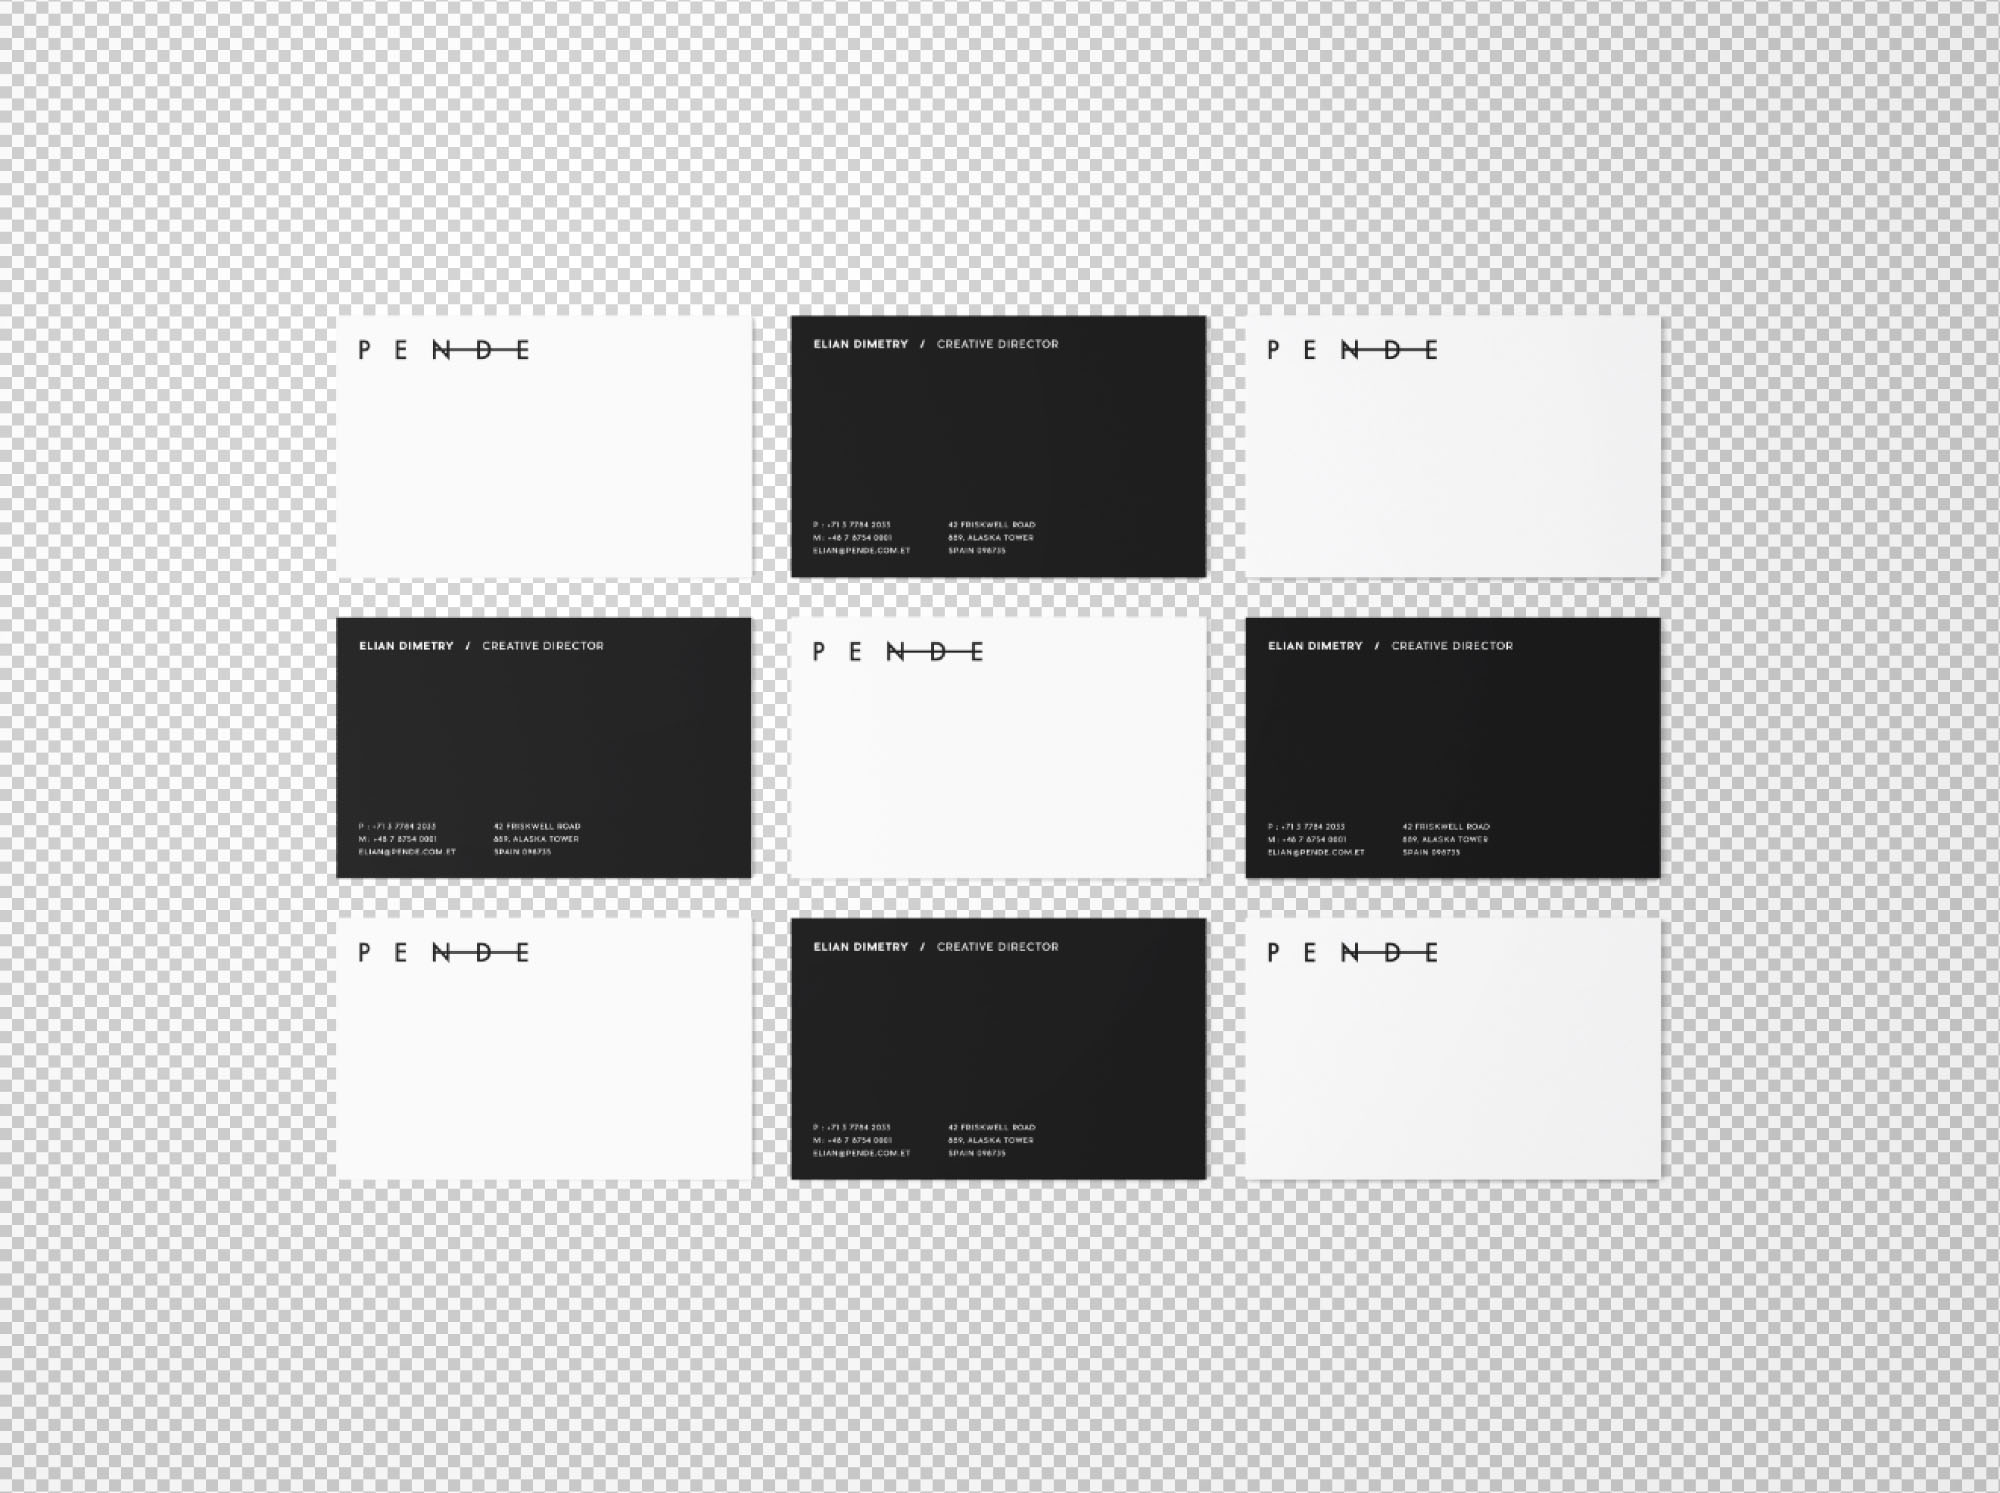 企业名片设计等距网格效果图样机 Uniform Overhead Business Cards Mockup插图(1)